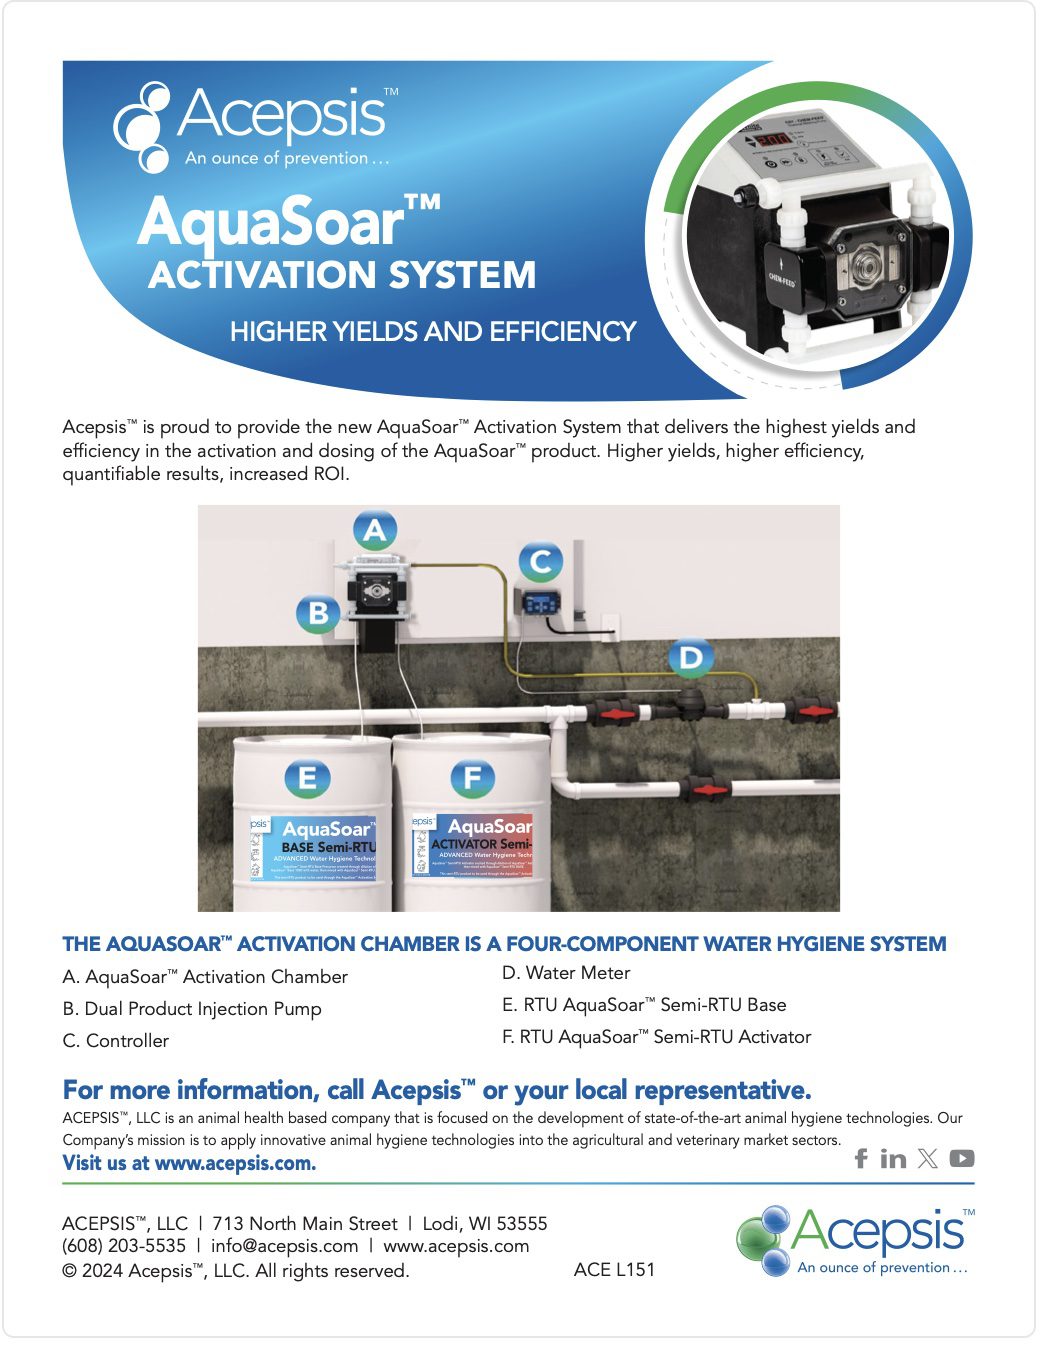 AquaSoar ActivationSystemChamber